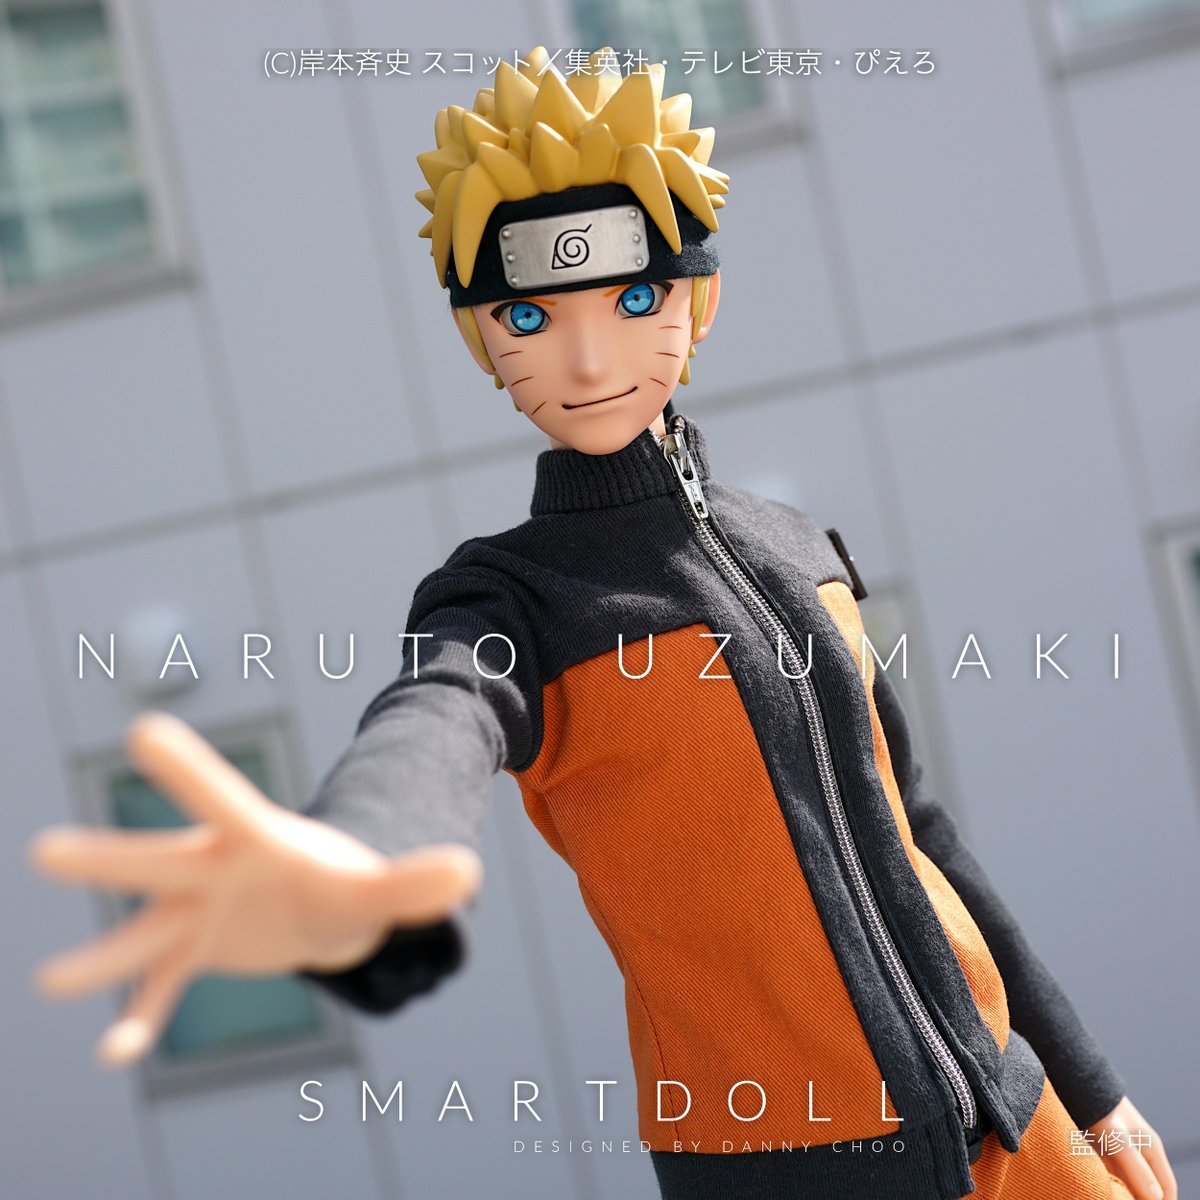 Danny Choo 国内外の人気タイトル Naruto ナルト の主人公である うずまきナルト がスマートドールになって登場 2月9日のワンフェスのメガハウスブースで初展示 インスターで写真がもっと見れる メイクはミスケイ 造形は坂島十谷 Naruto